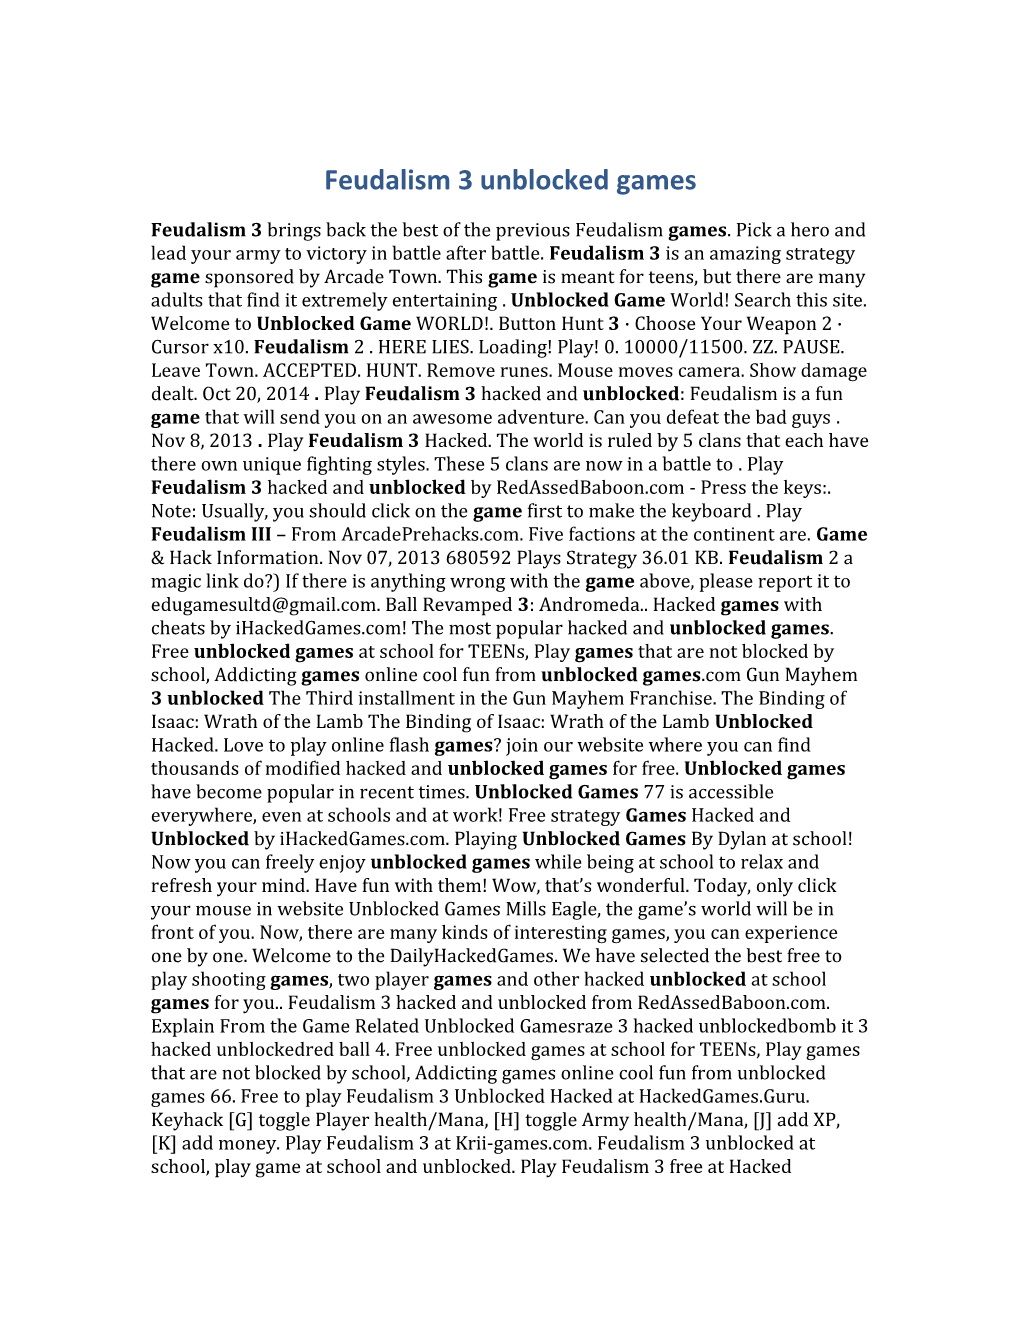 Feudalism 3 Unblocked Games